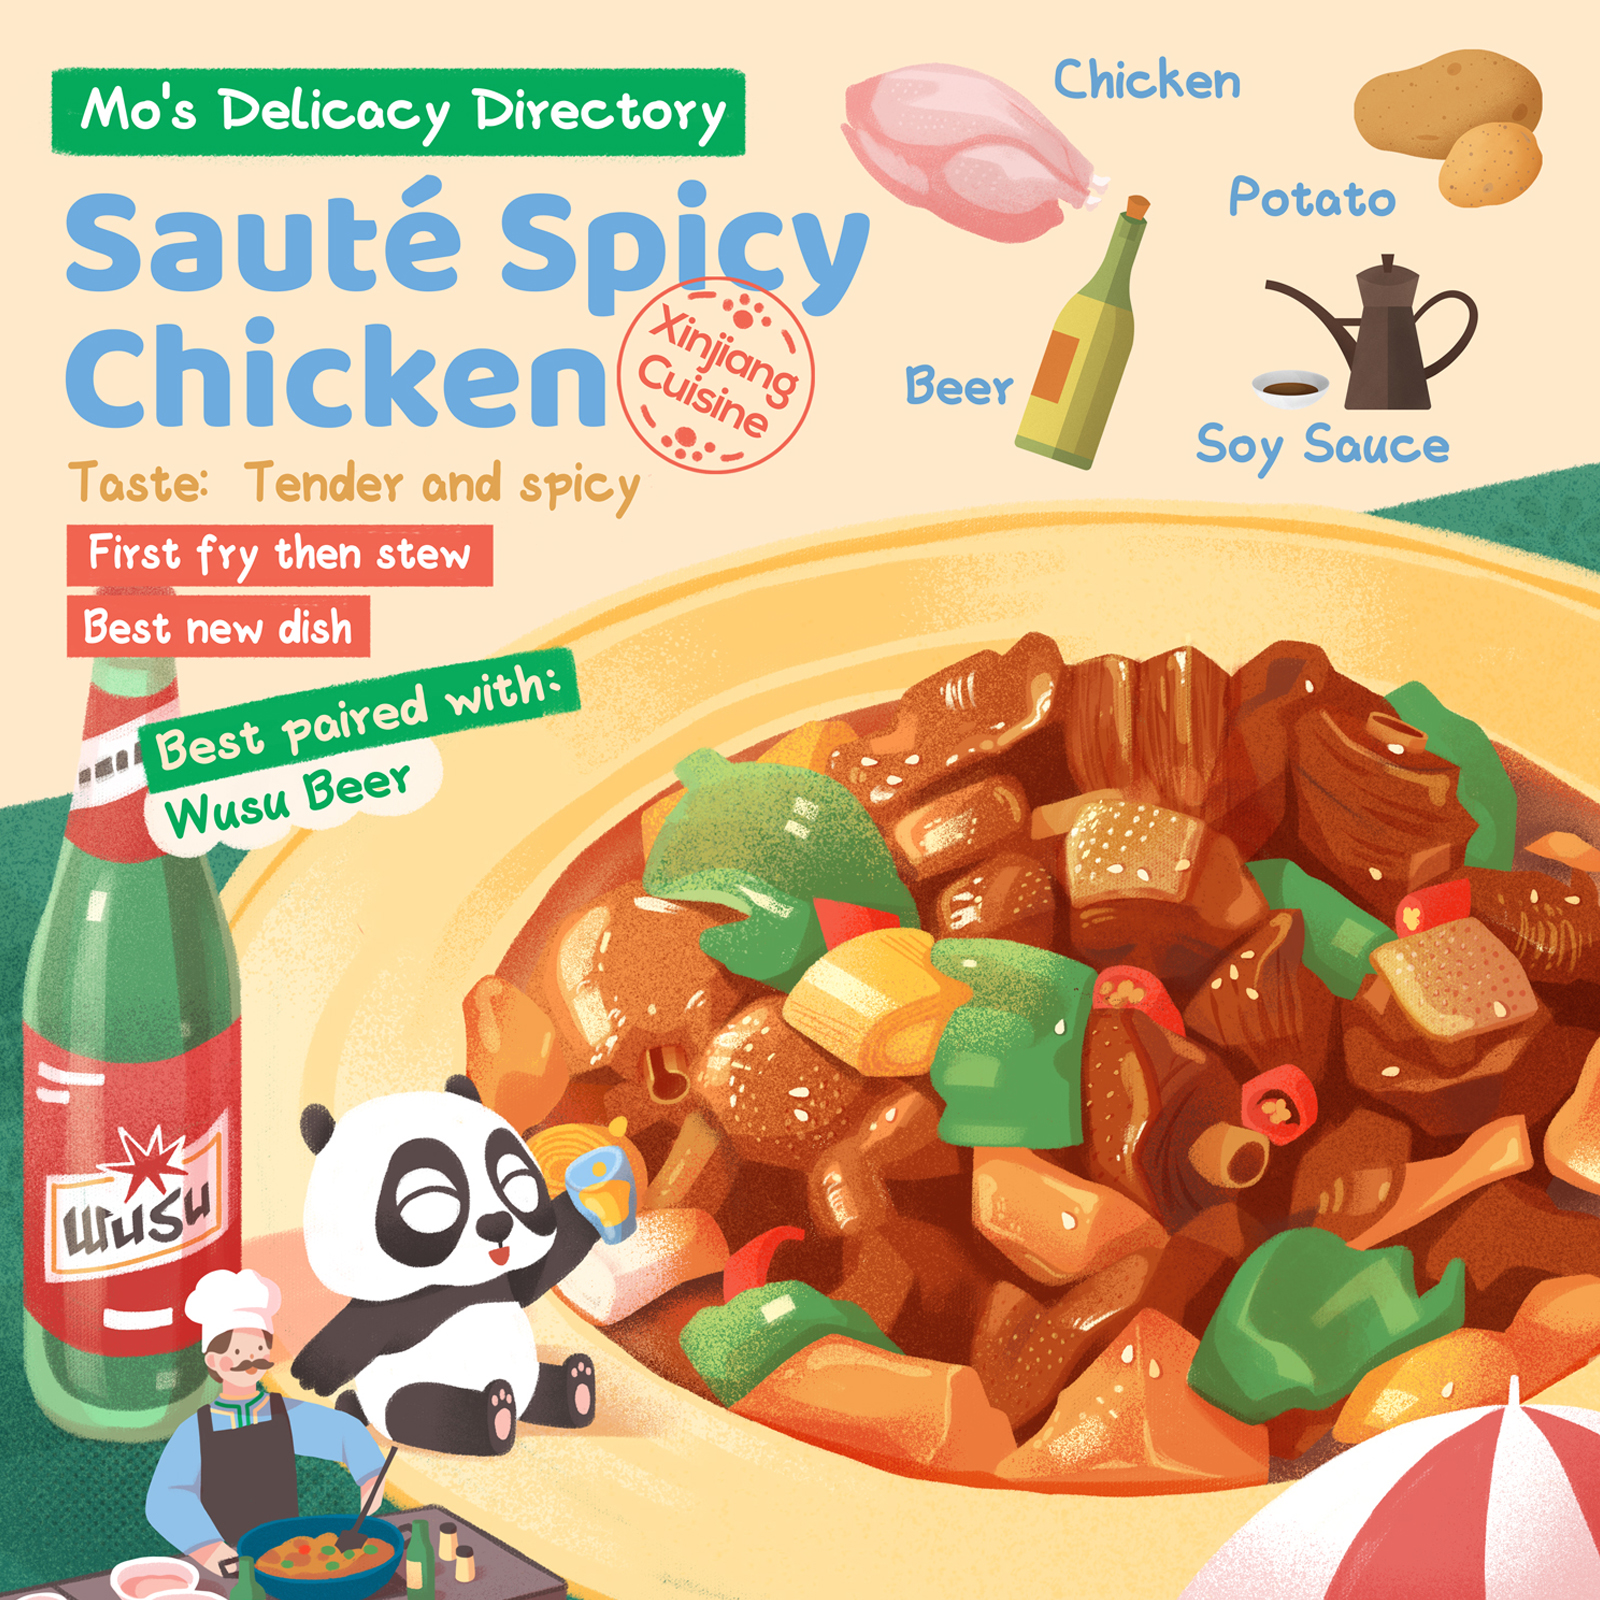 Mo's delicacy directory: Xinjiang cuisine